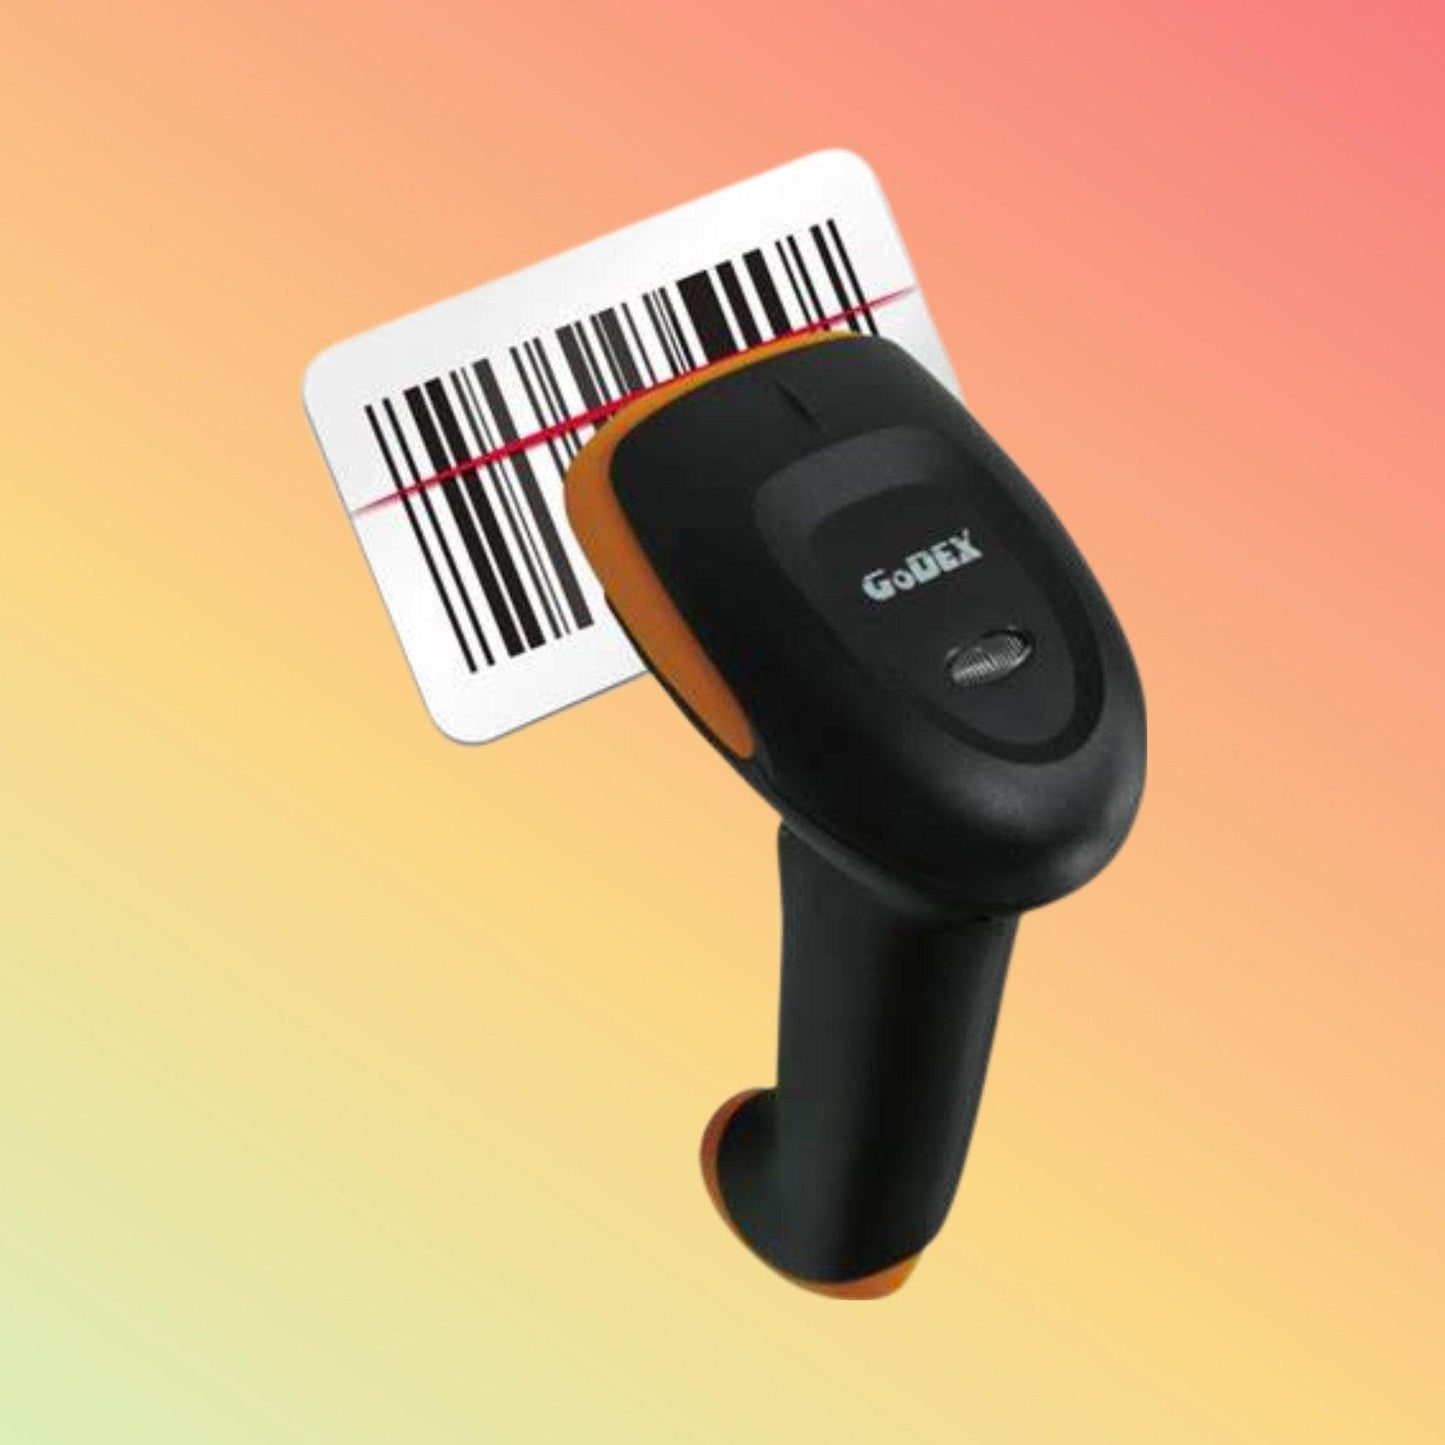 Barcode Scanner - Godex GS220U - Neotech